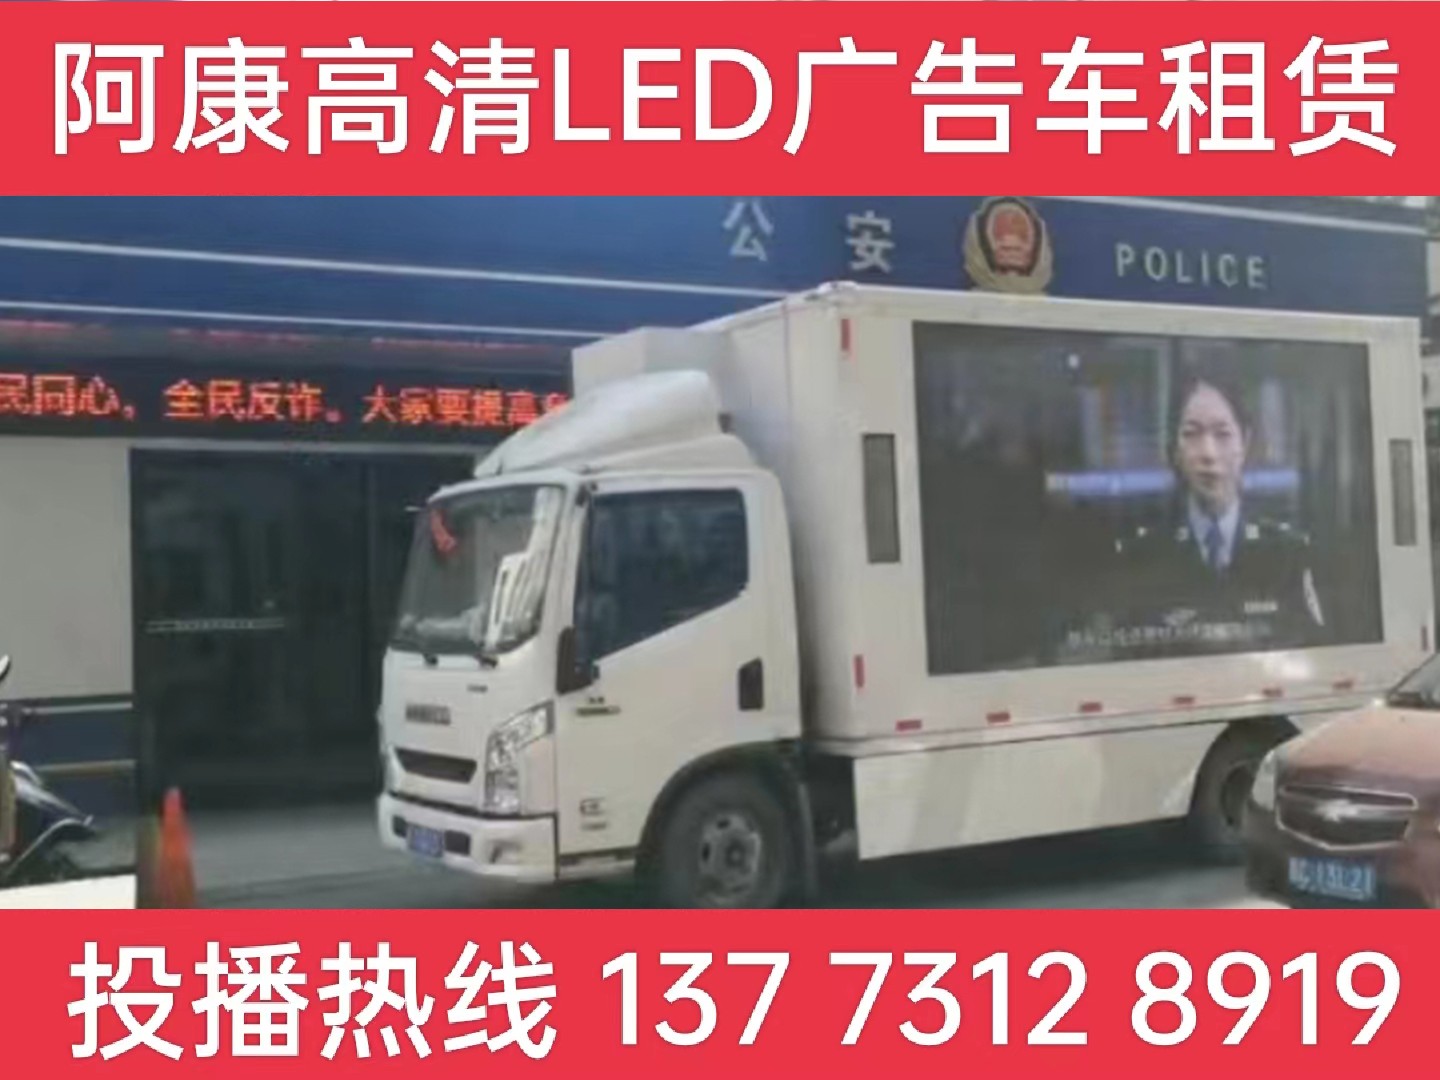 海安市LED广告车租赁-反诈宣传